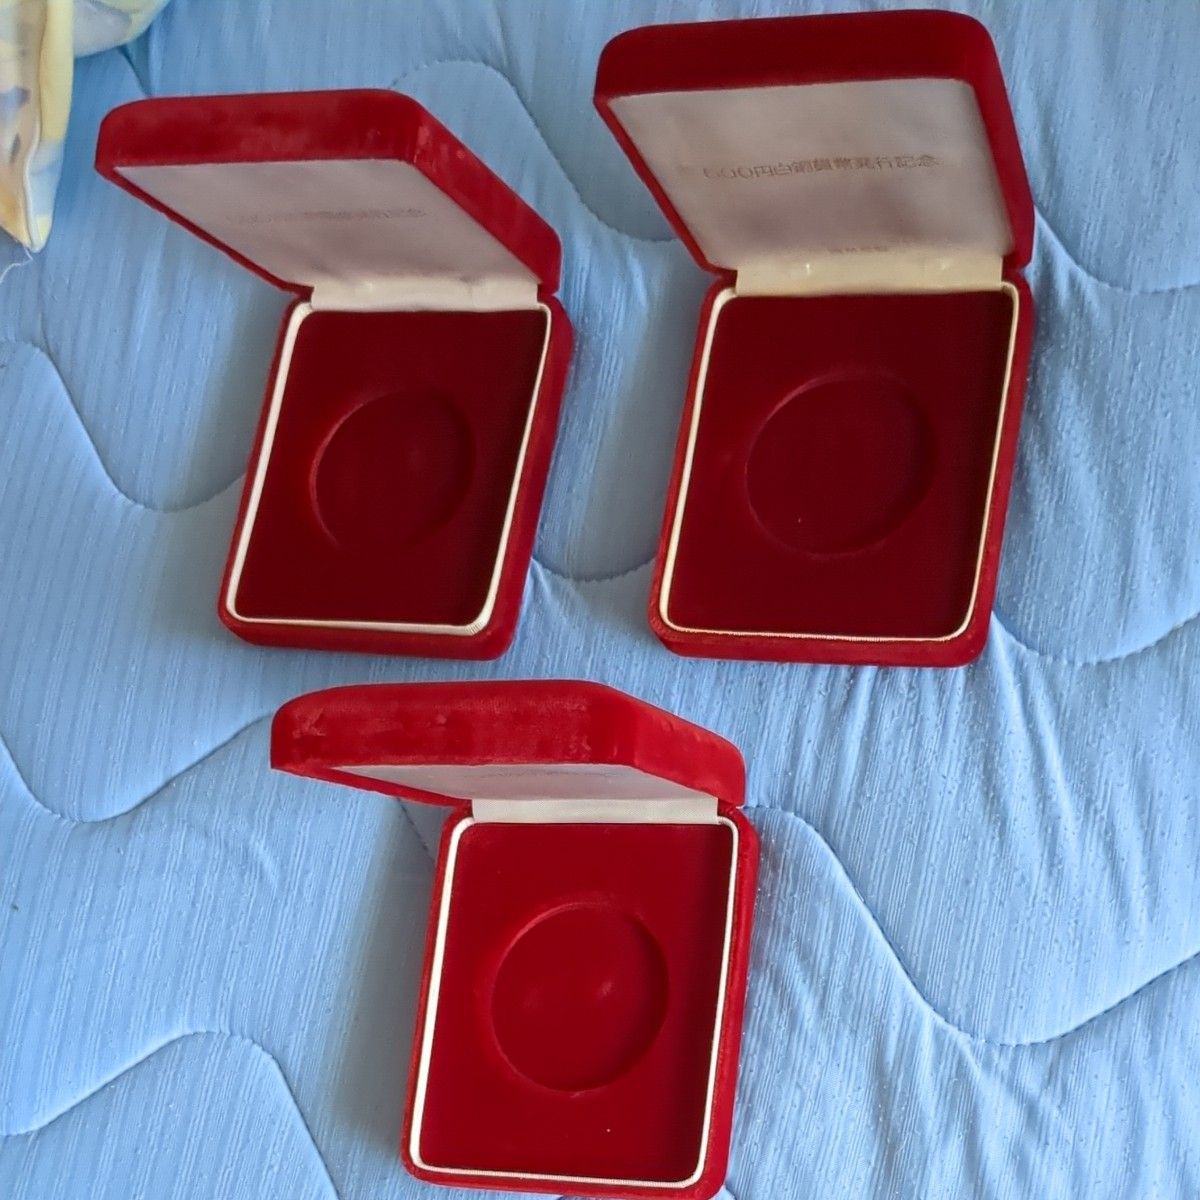 500円白銅貨記念メダル コレクション 造幣局 純銀 純銀メダルケースのみ3個まとめて